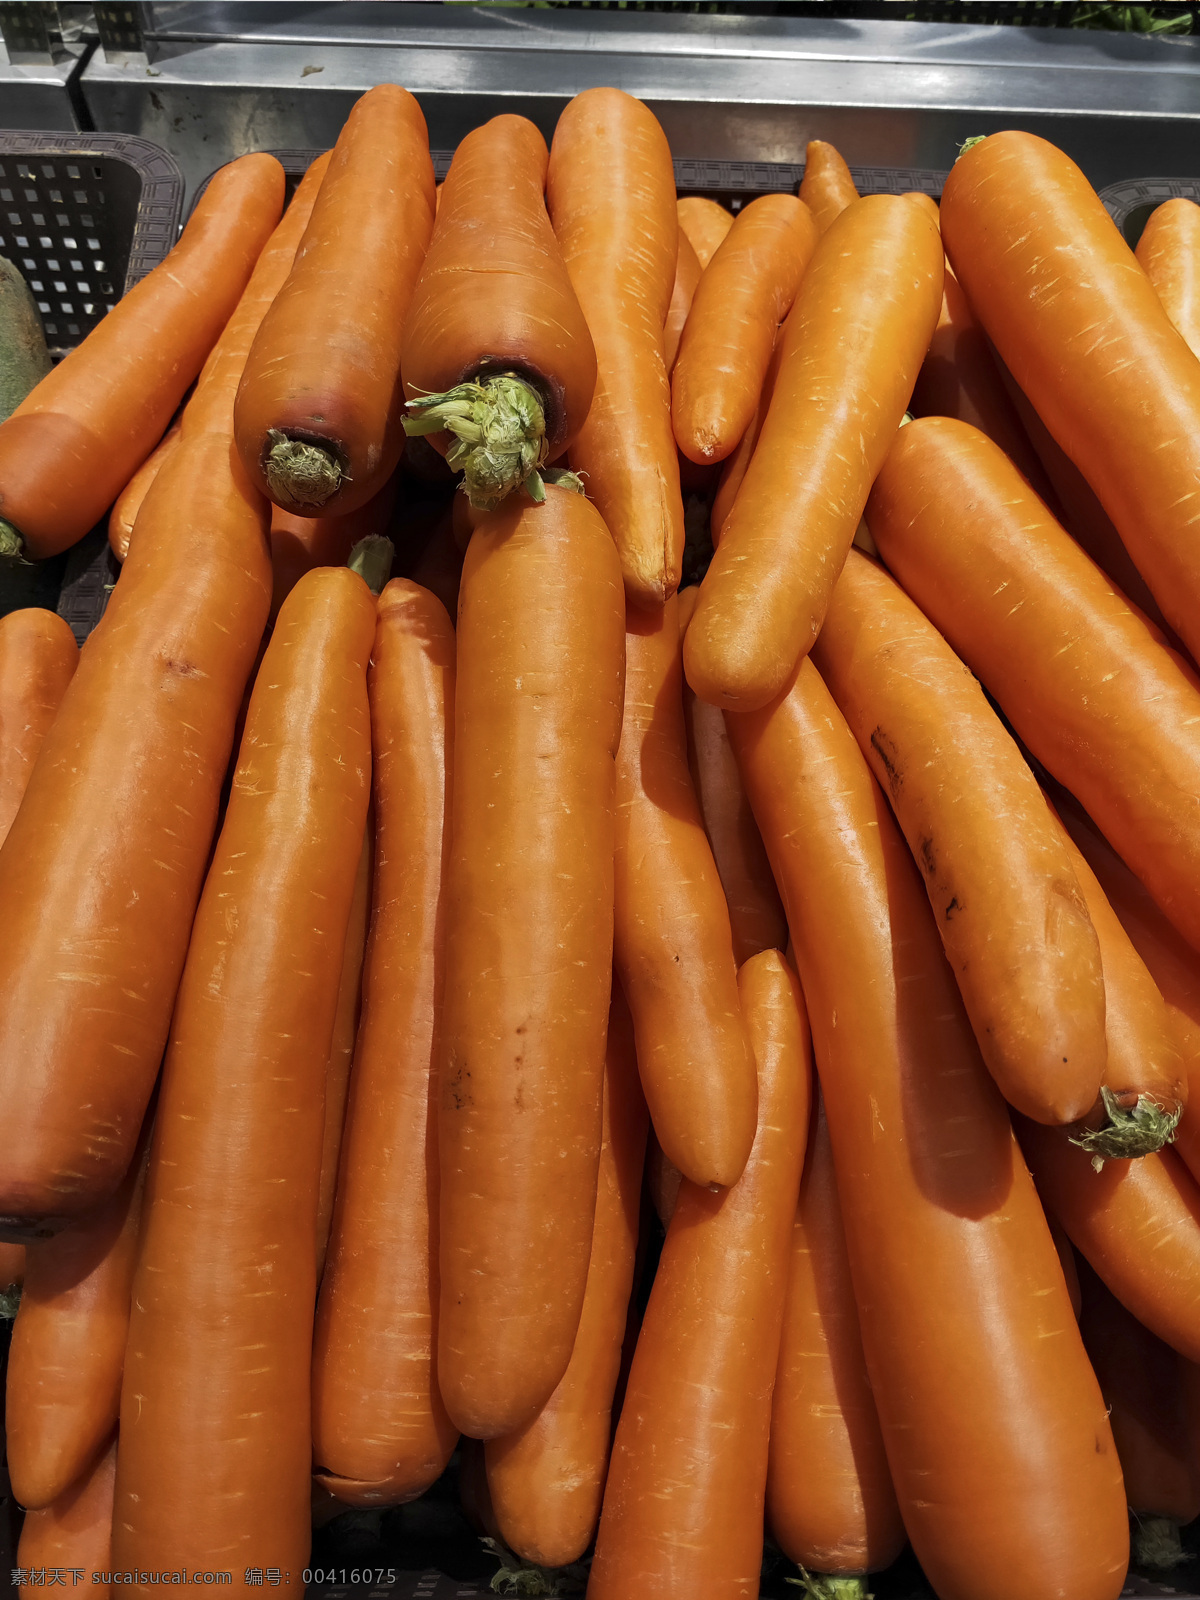 胡萝卜 蔬菜 超市 生态 有机 食物 厨房 美食 新鲜 原料 餐饮 餐饮美食 食物原料